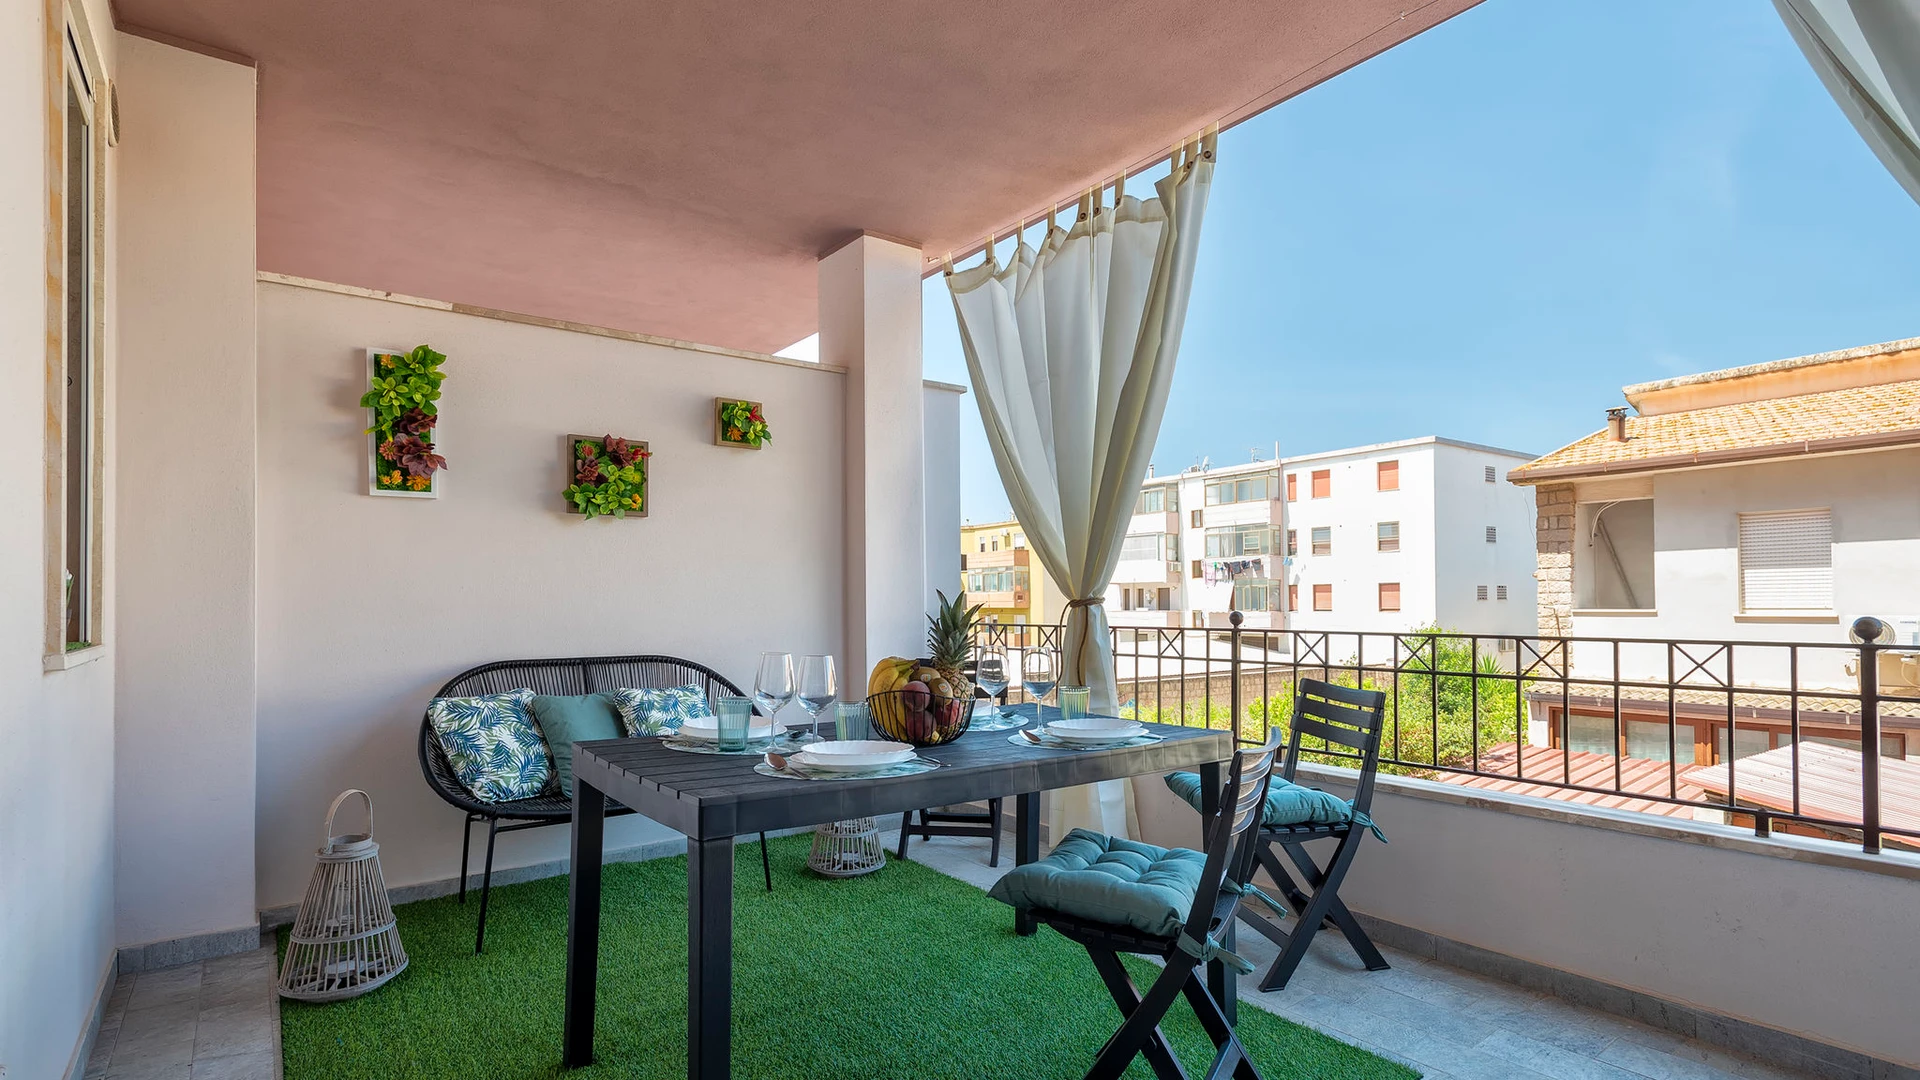 Apartamento moderno y luminoso en L'alguer/alghero